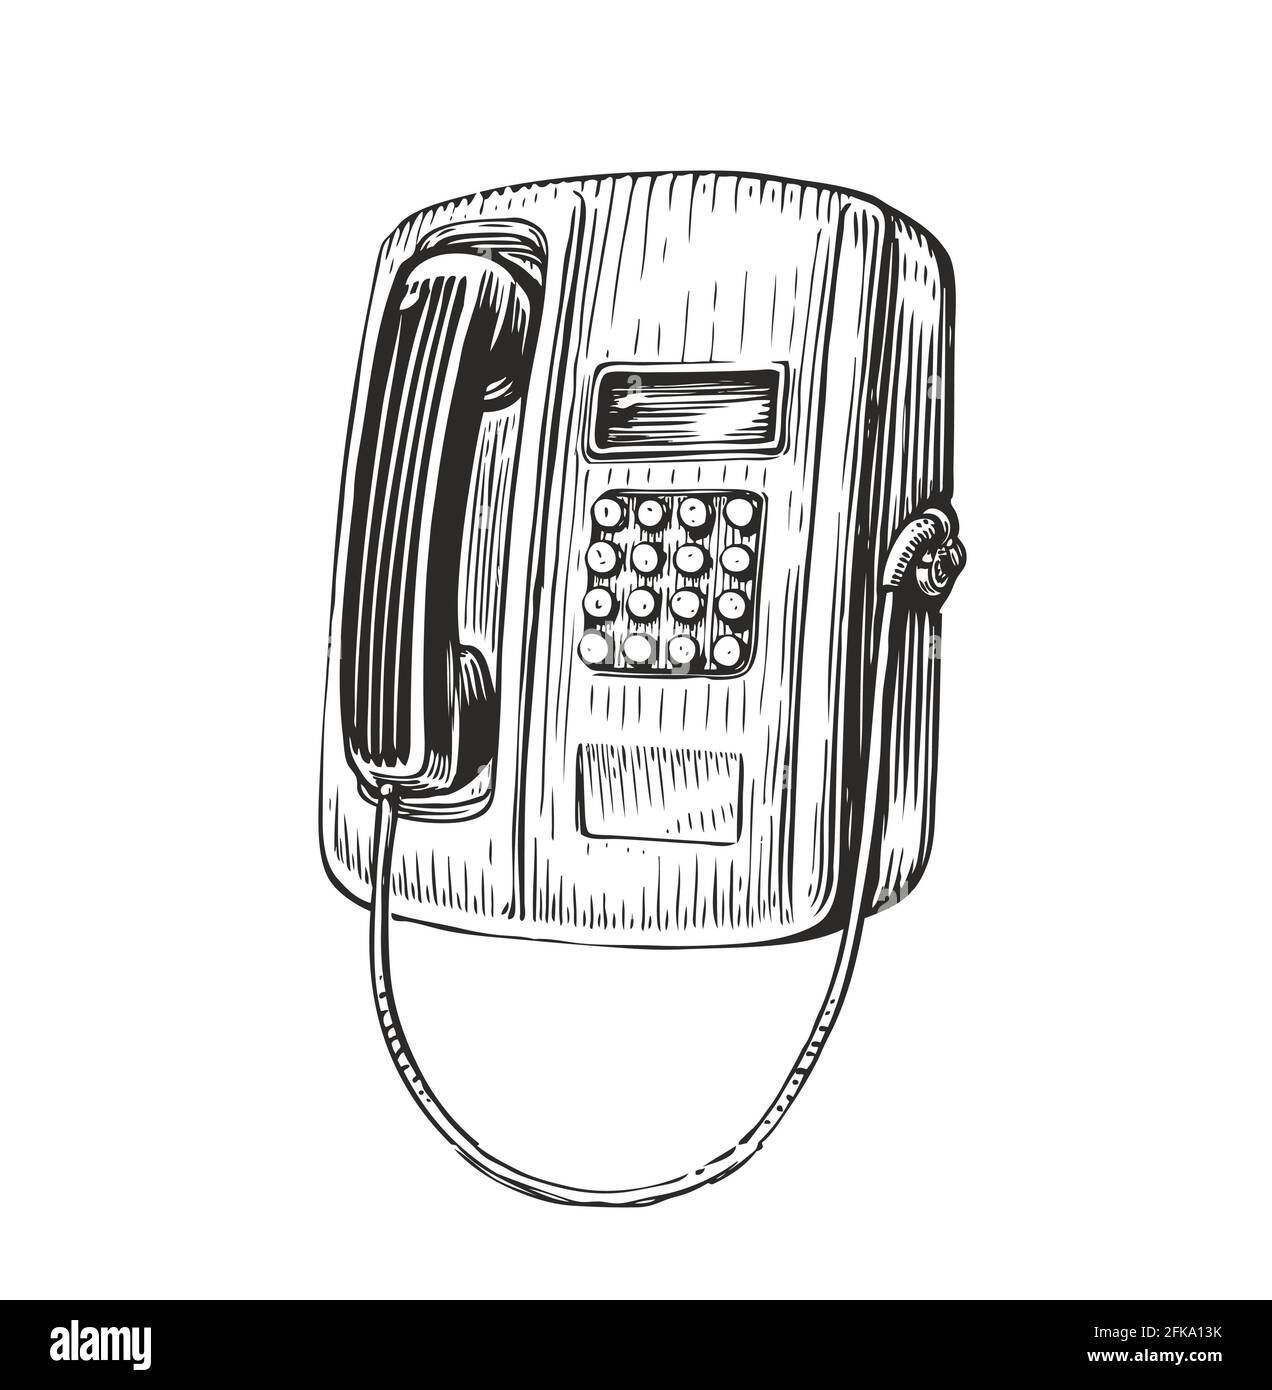 Croquis rétro du téléphone public. Téléphone public avec gravure vintage. Illustration vectorielle Illustration de Vecteur